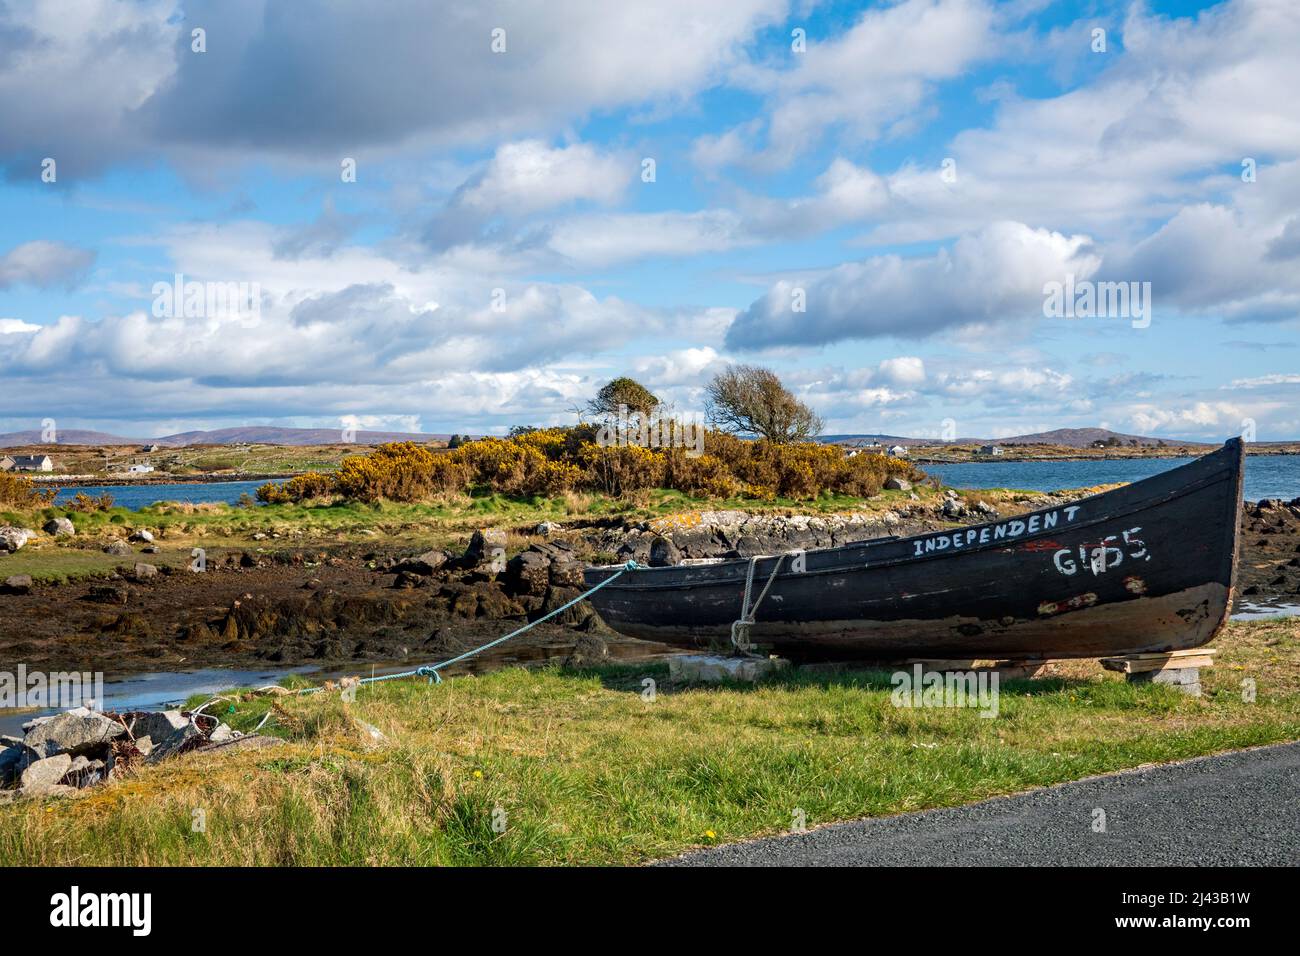 Bateau dans le village de pêcheurs de Roundstone à Connemara, Co. Galway, Irlande Banque D'Images